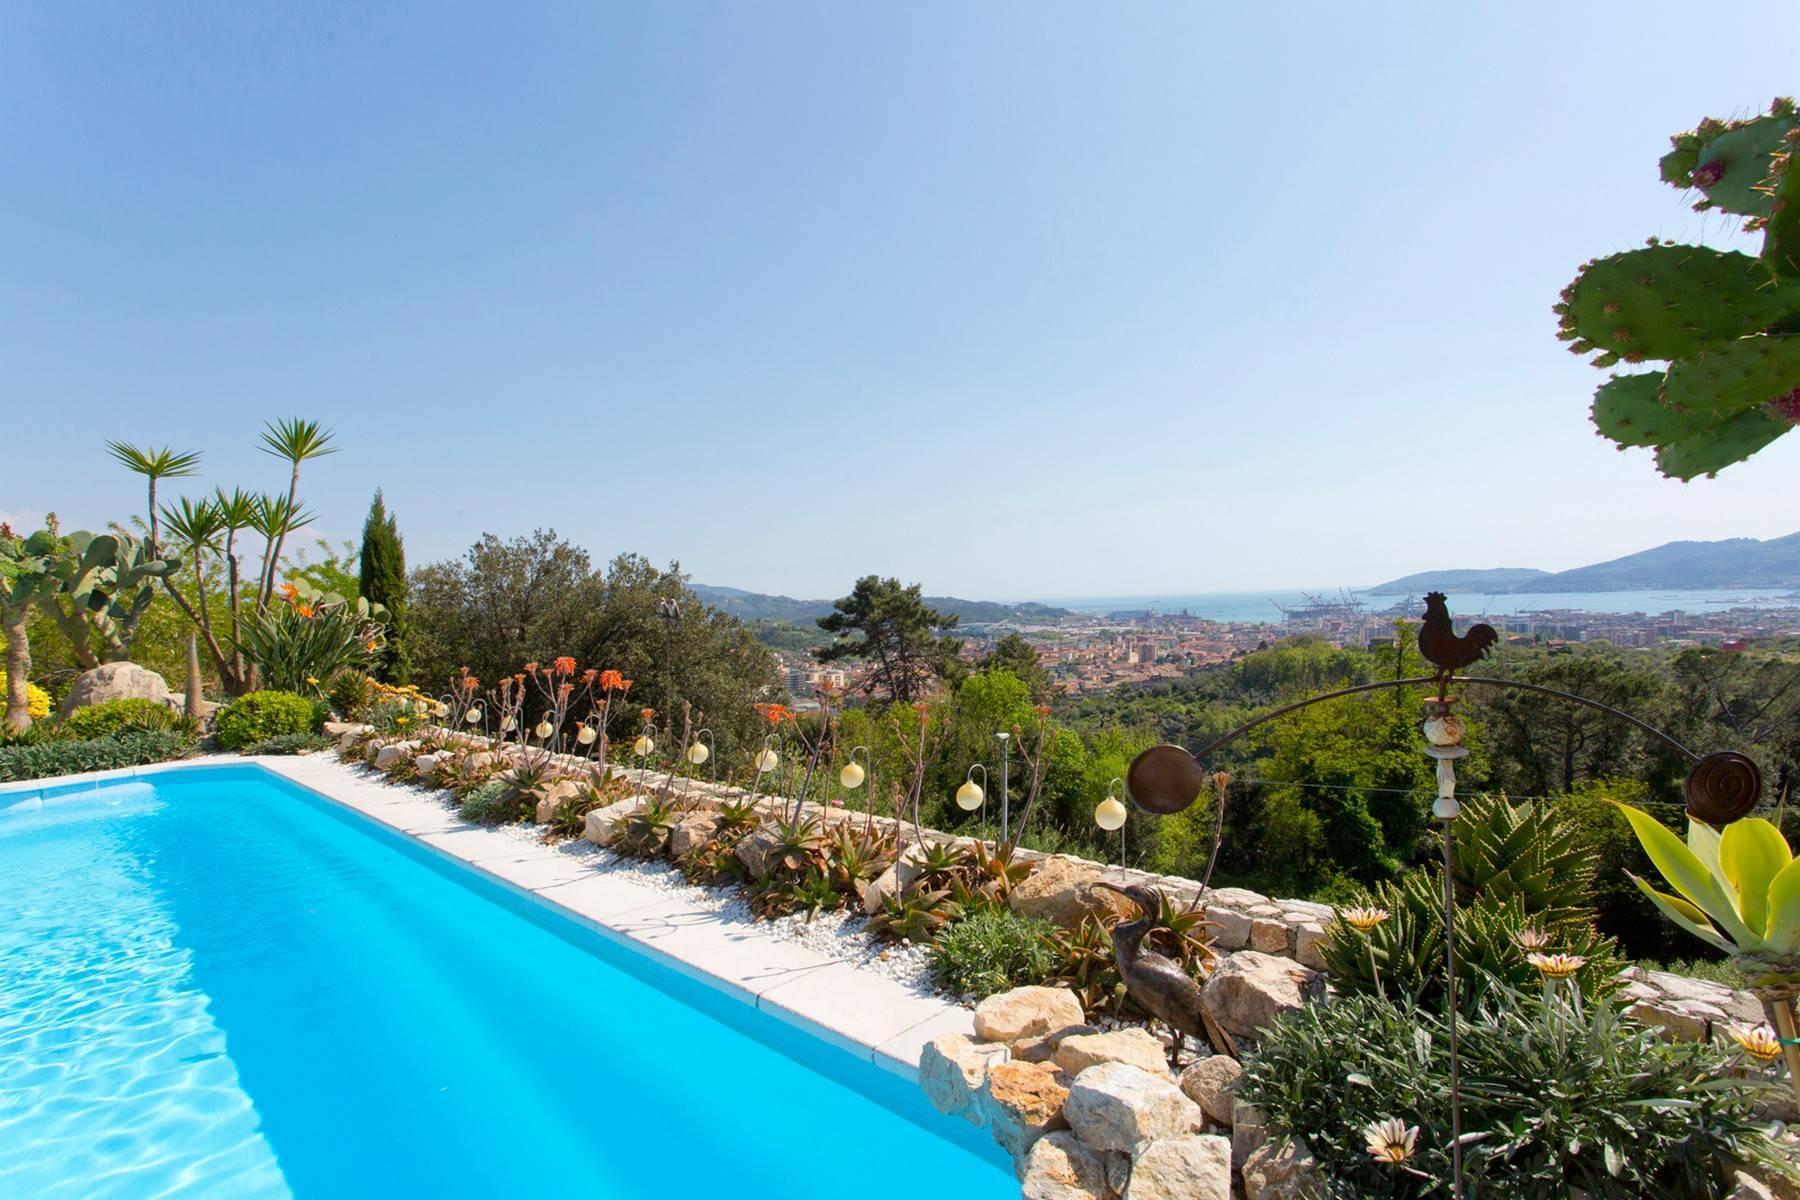 Stunning villa overlooking the bay of La Spezia - 15